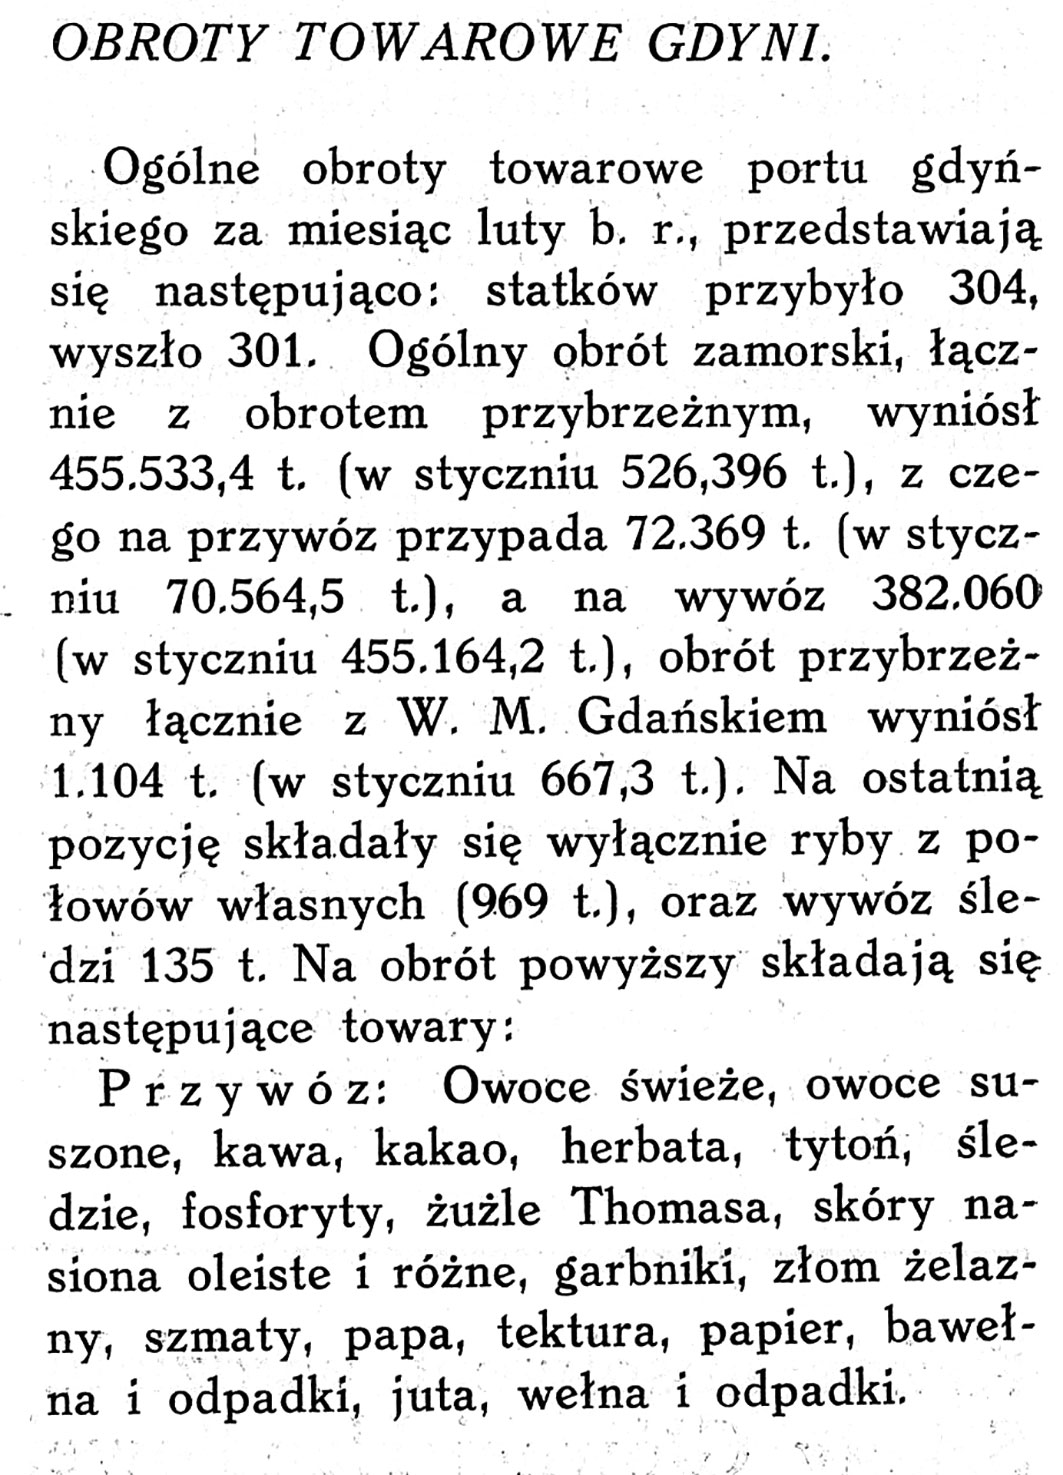 Obroty towarowe Gdyni // Biuletyn Gospodarczy. - 1934, nr [brak danych], s. 8